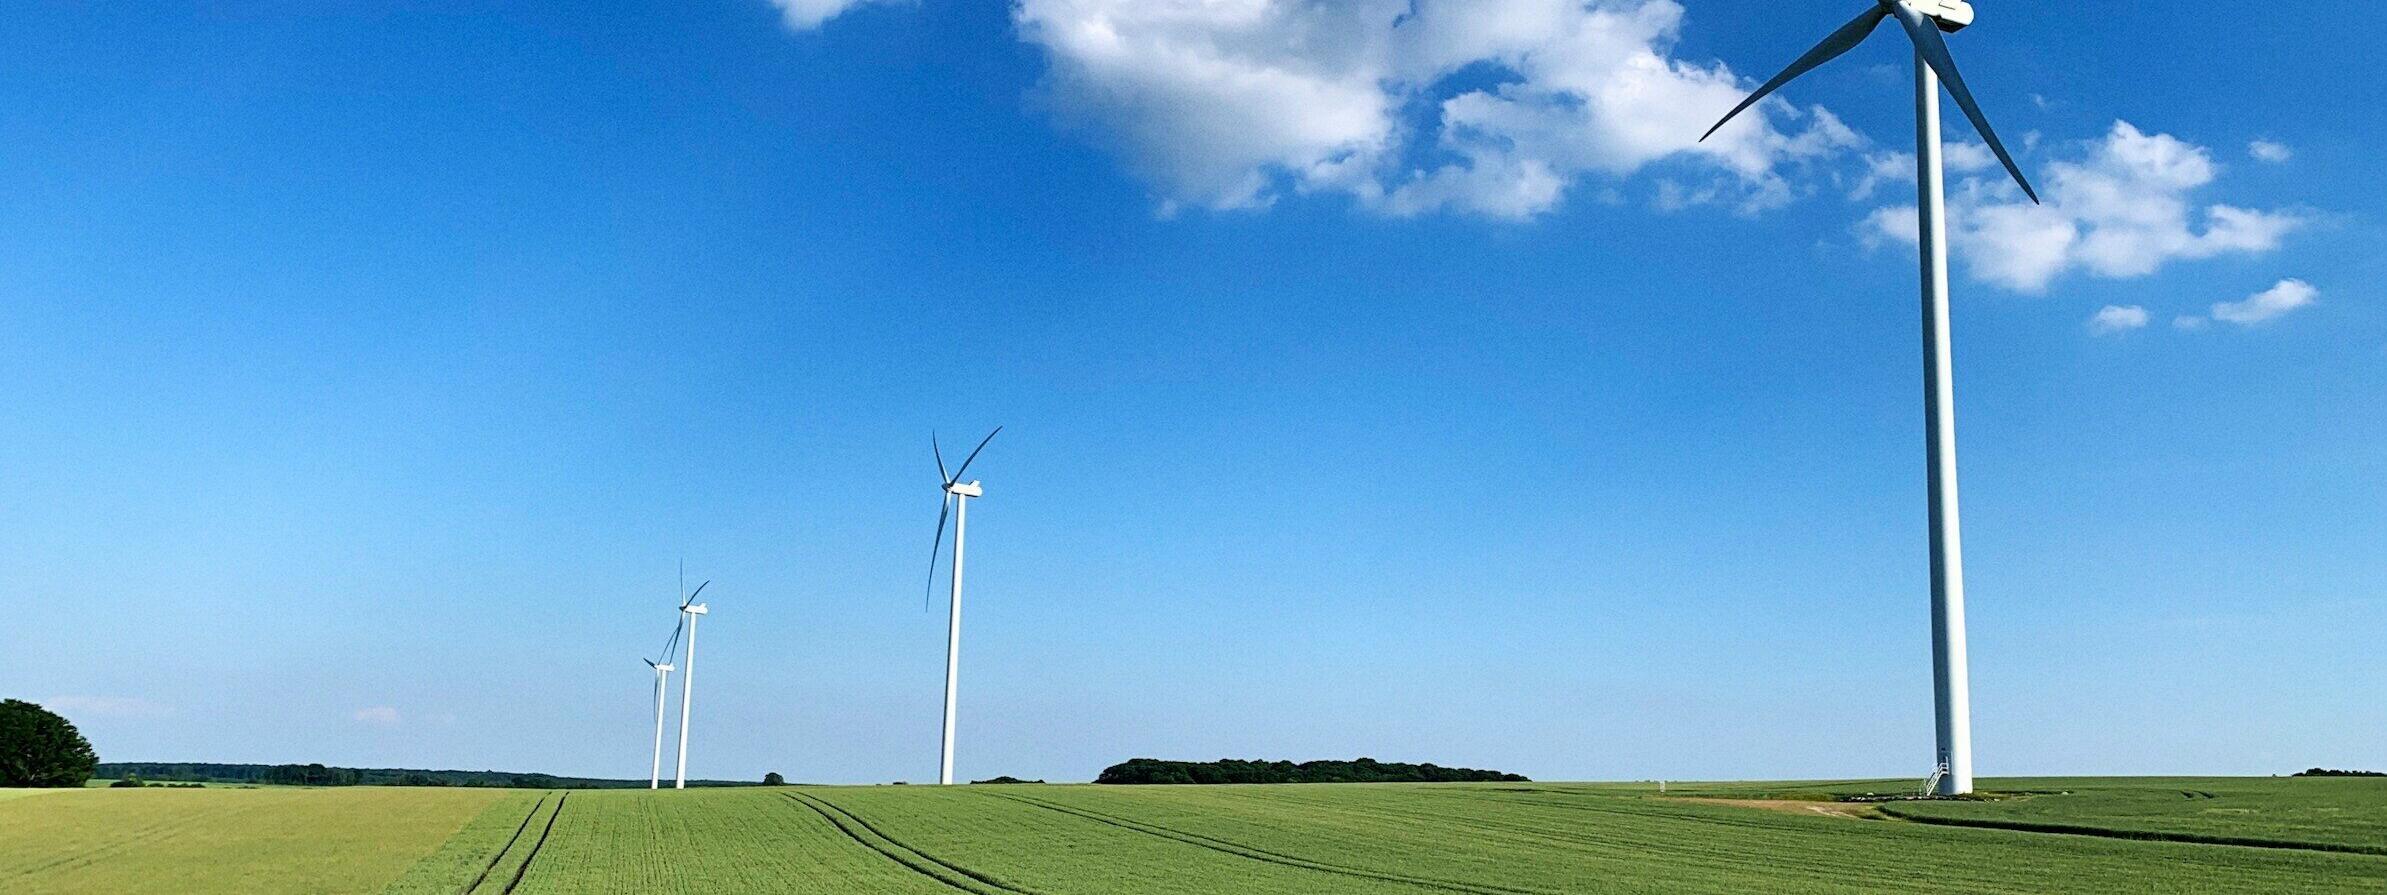 Windräder auf einem Getreidefeld, blauer Himmel